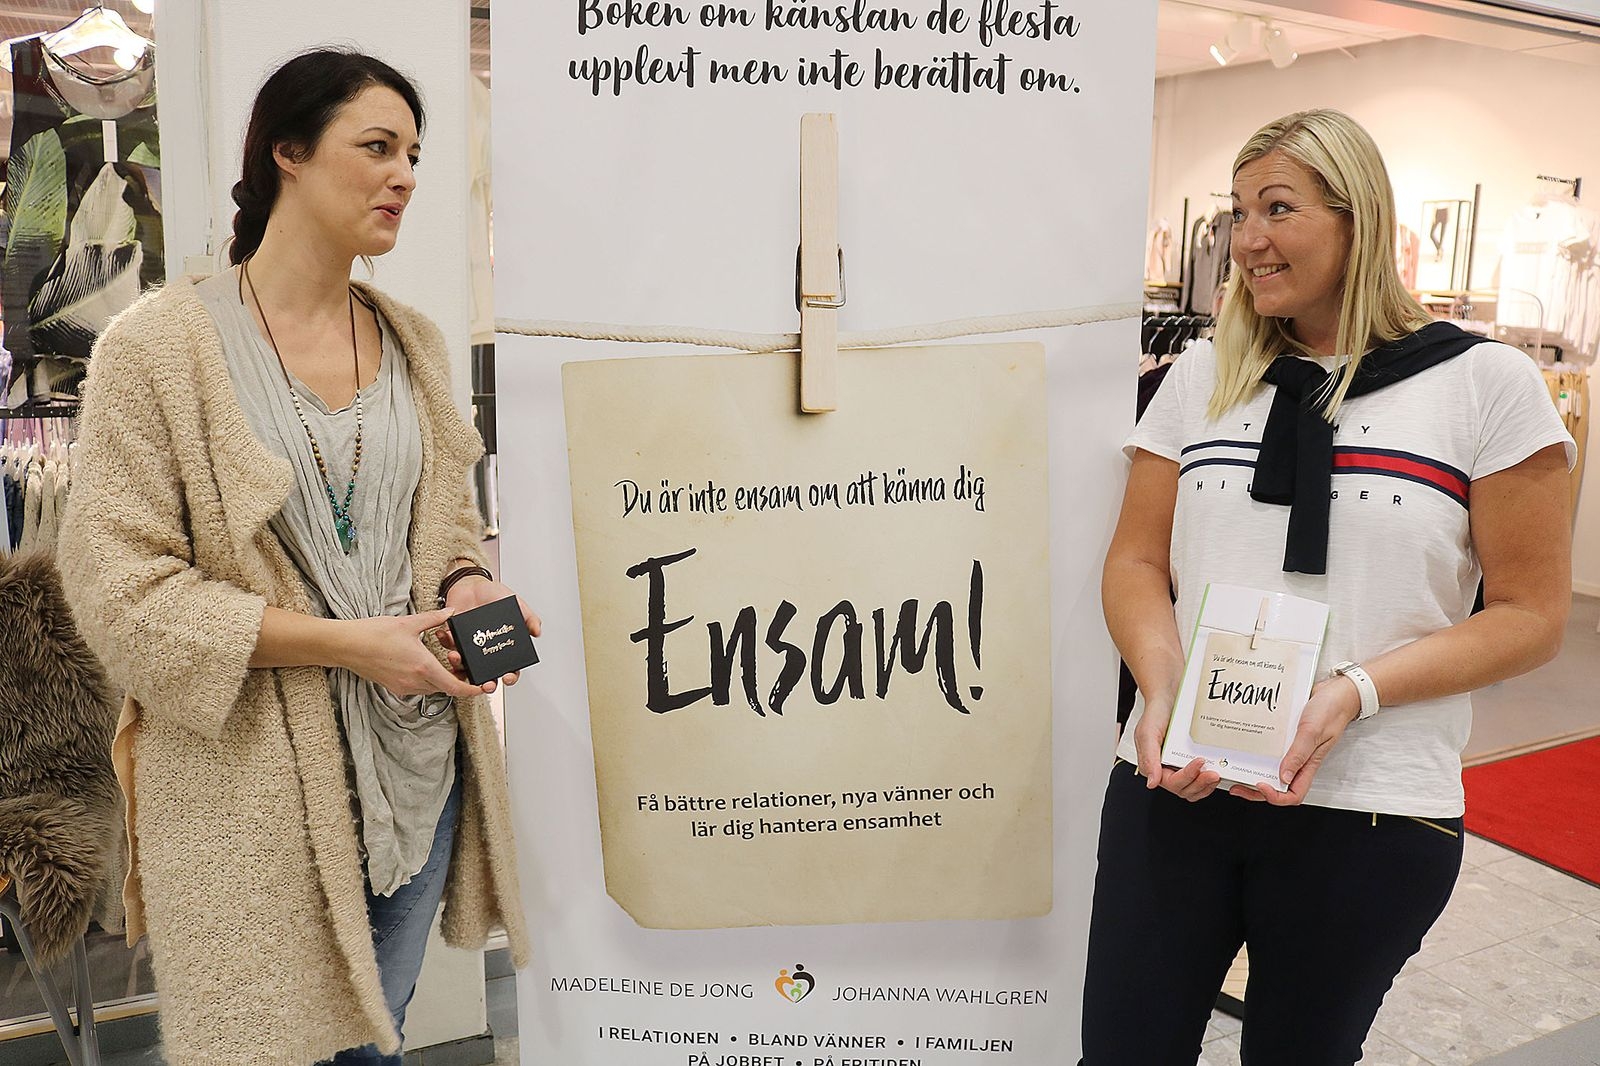 Madeleine de Jong och Johanna Wahlgren har tillsammans skrivit boken Ensam, som lanserades under tjejkvällen. Två tjejer som har vågat ta upp och skriva om ”känslan de flesta av oss har upplevt men inte berättat om”.